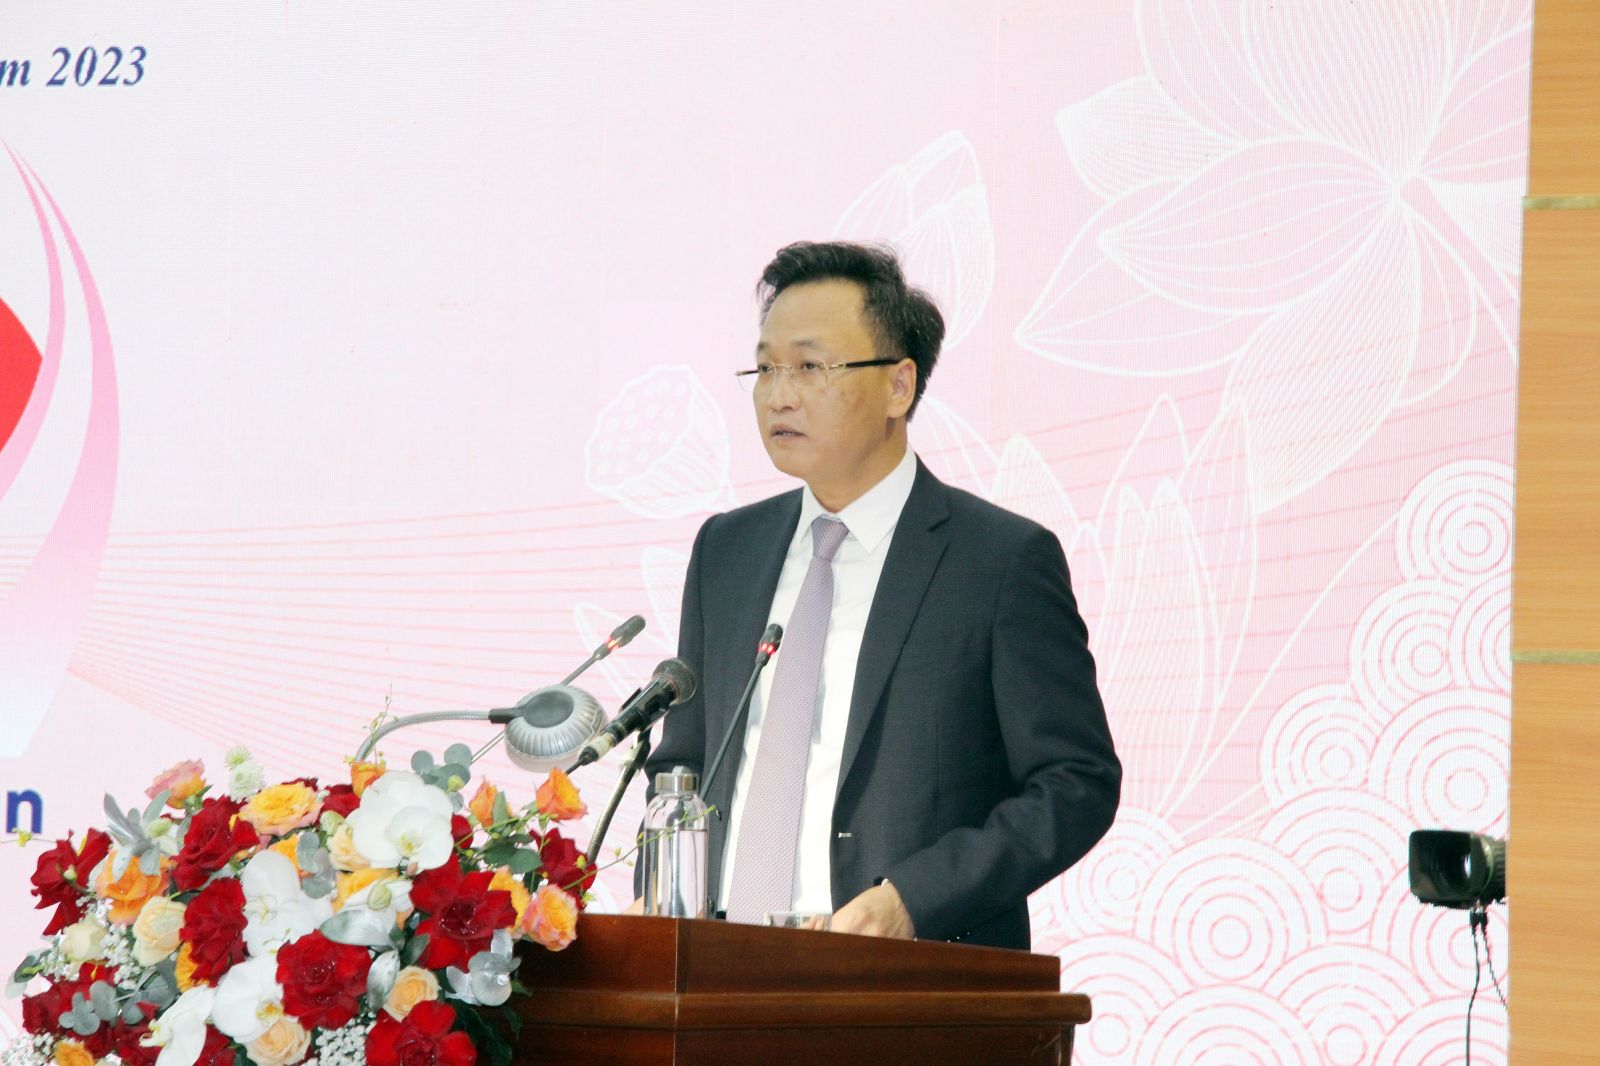 Bí thư Tỉnh ủy Hưng Yên Nguyễn Hữu Nghĩa cam kết sẽ tạo điều kiện tối đa và luôn đồng hành cùng các nhà đầu tư, doanh nghiệp đến với tỉnh